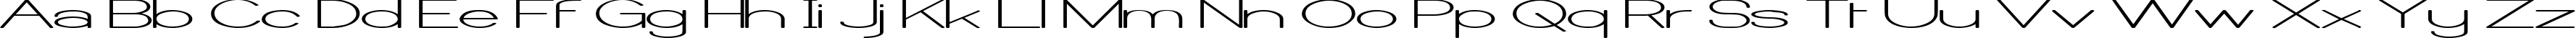 Пример написания английского алфавита шрифтом Castorgate Wide